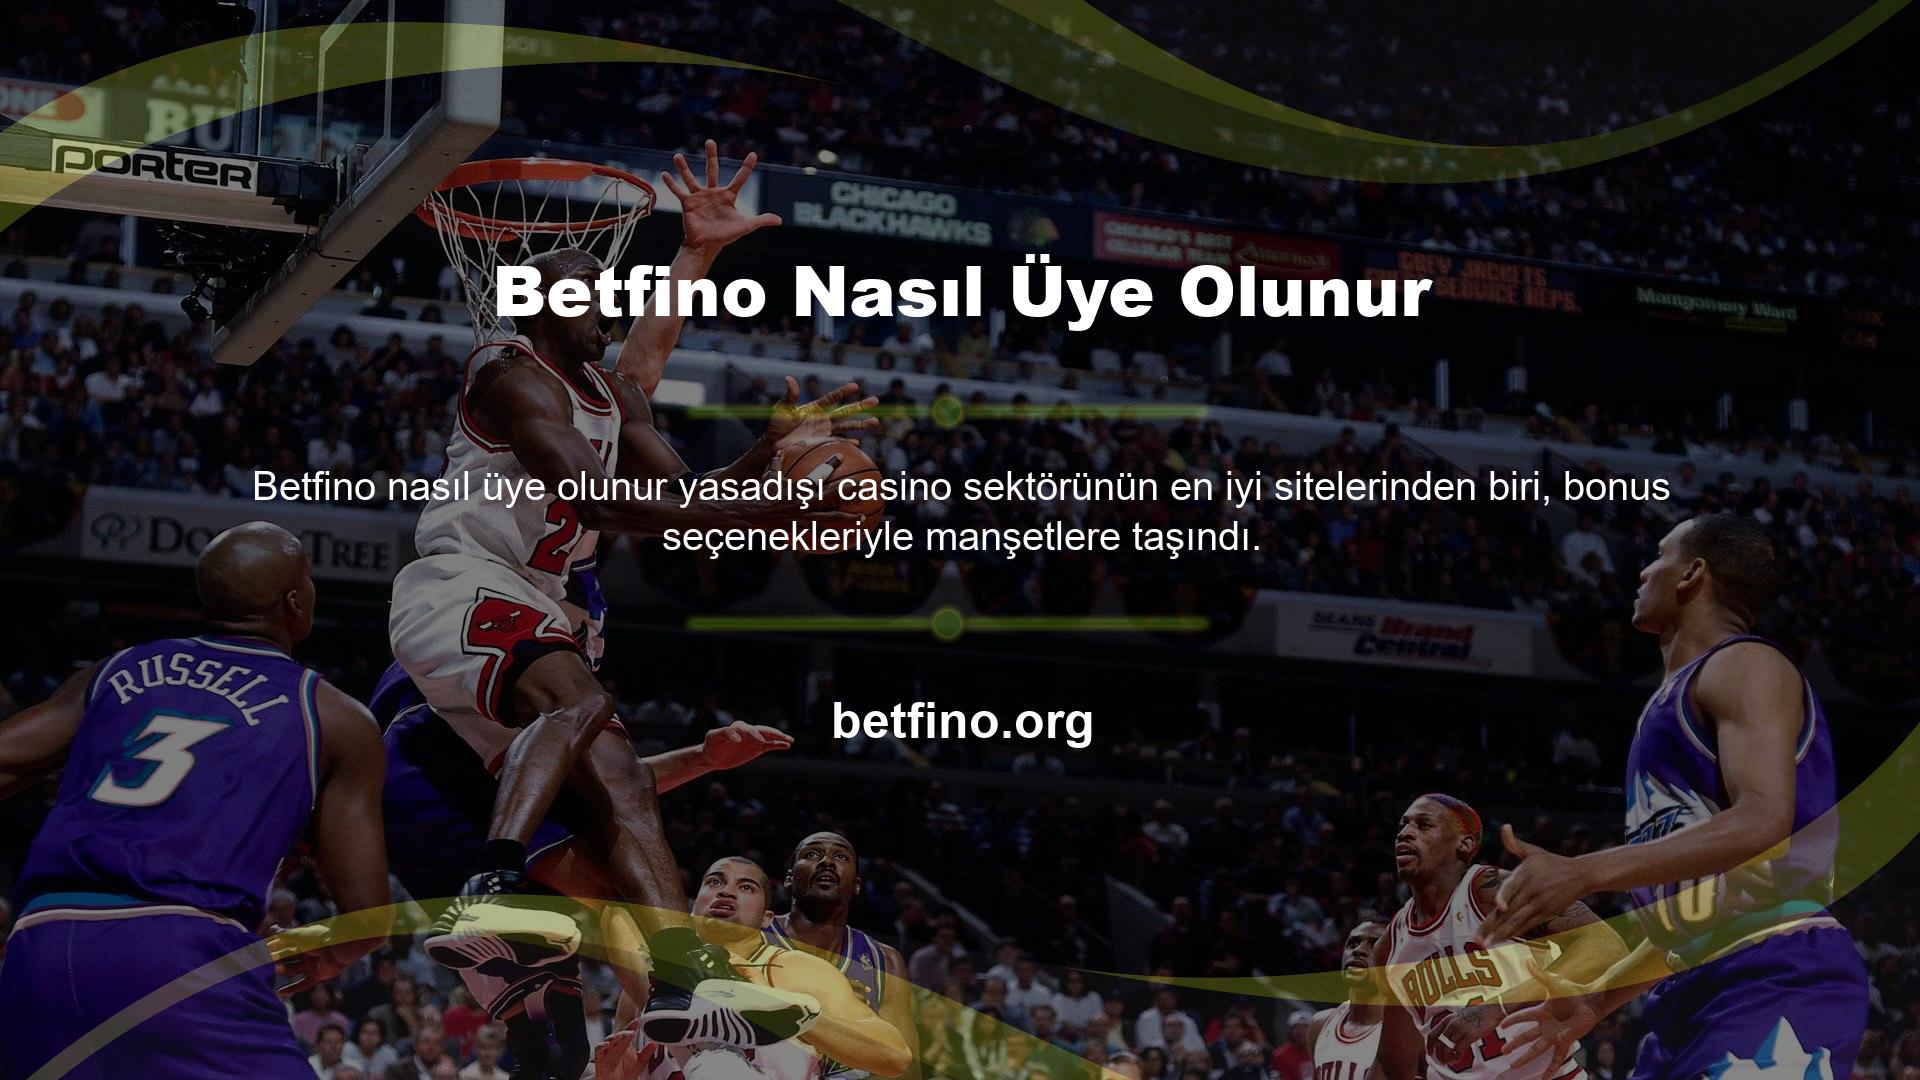 Betfino web sitesi, yüksek oranlar ve yasa dışı bahis fırsatları sunan bahis sitelerinden biridir